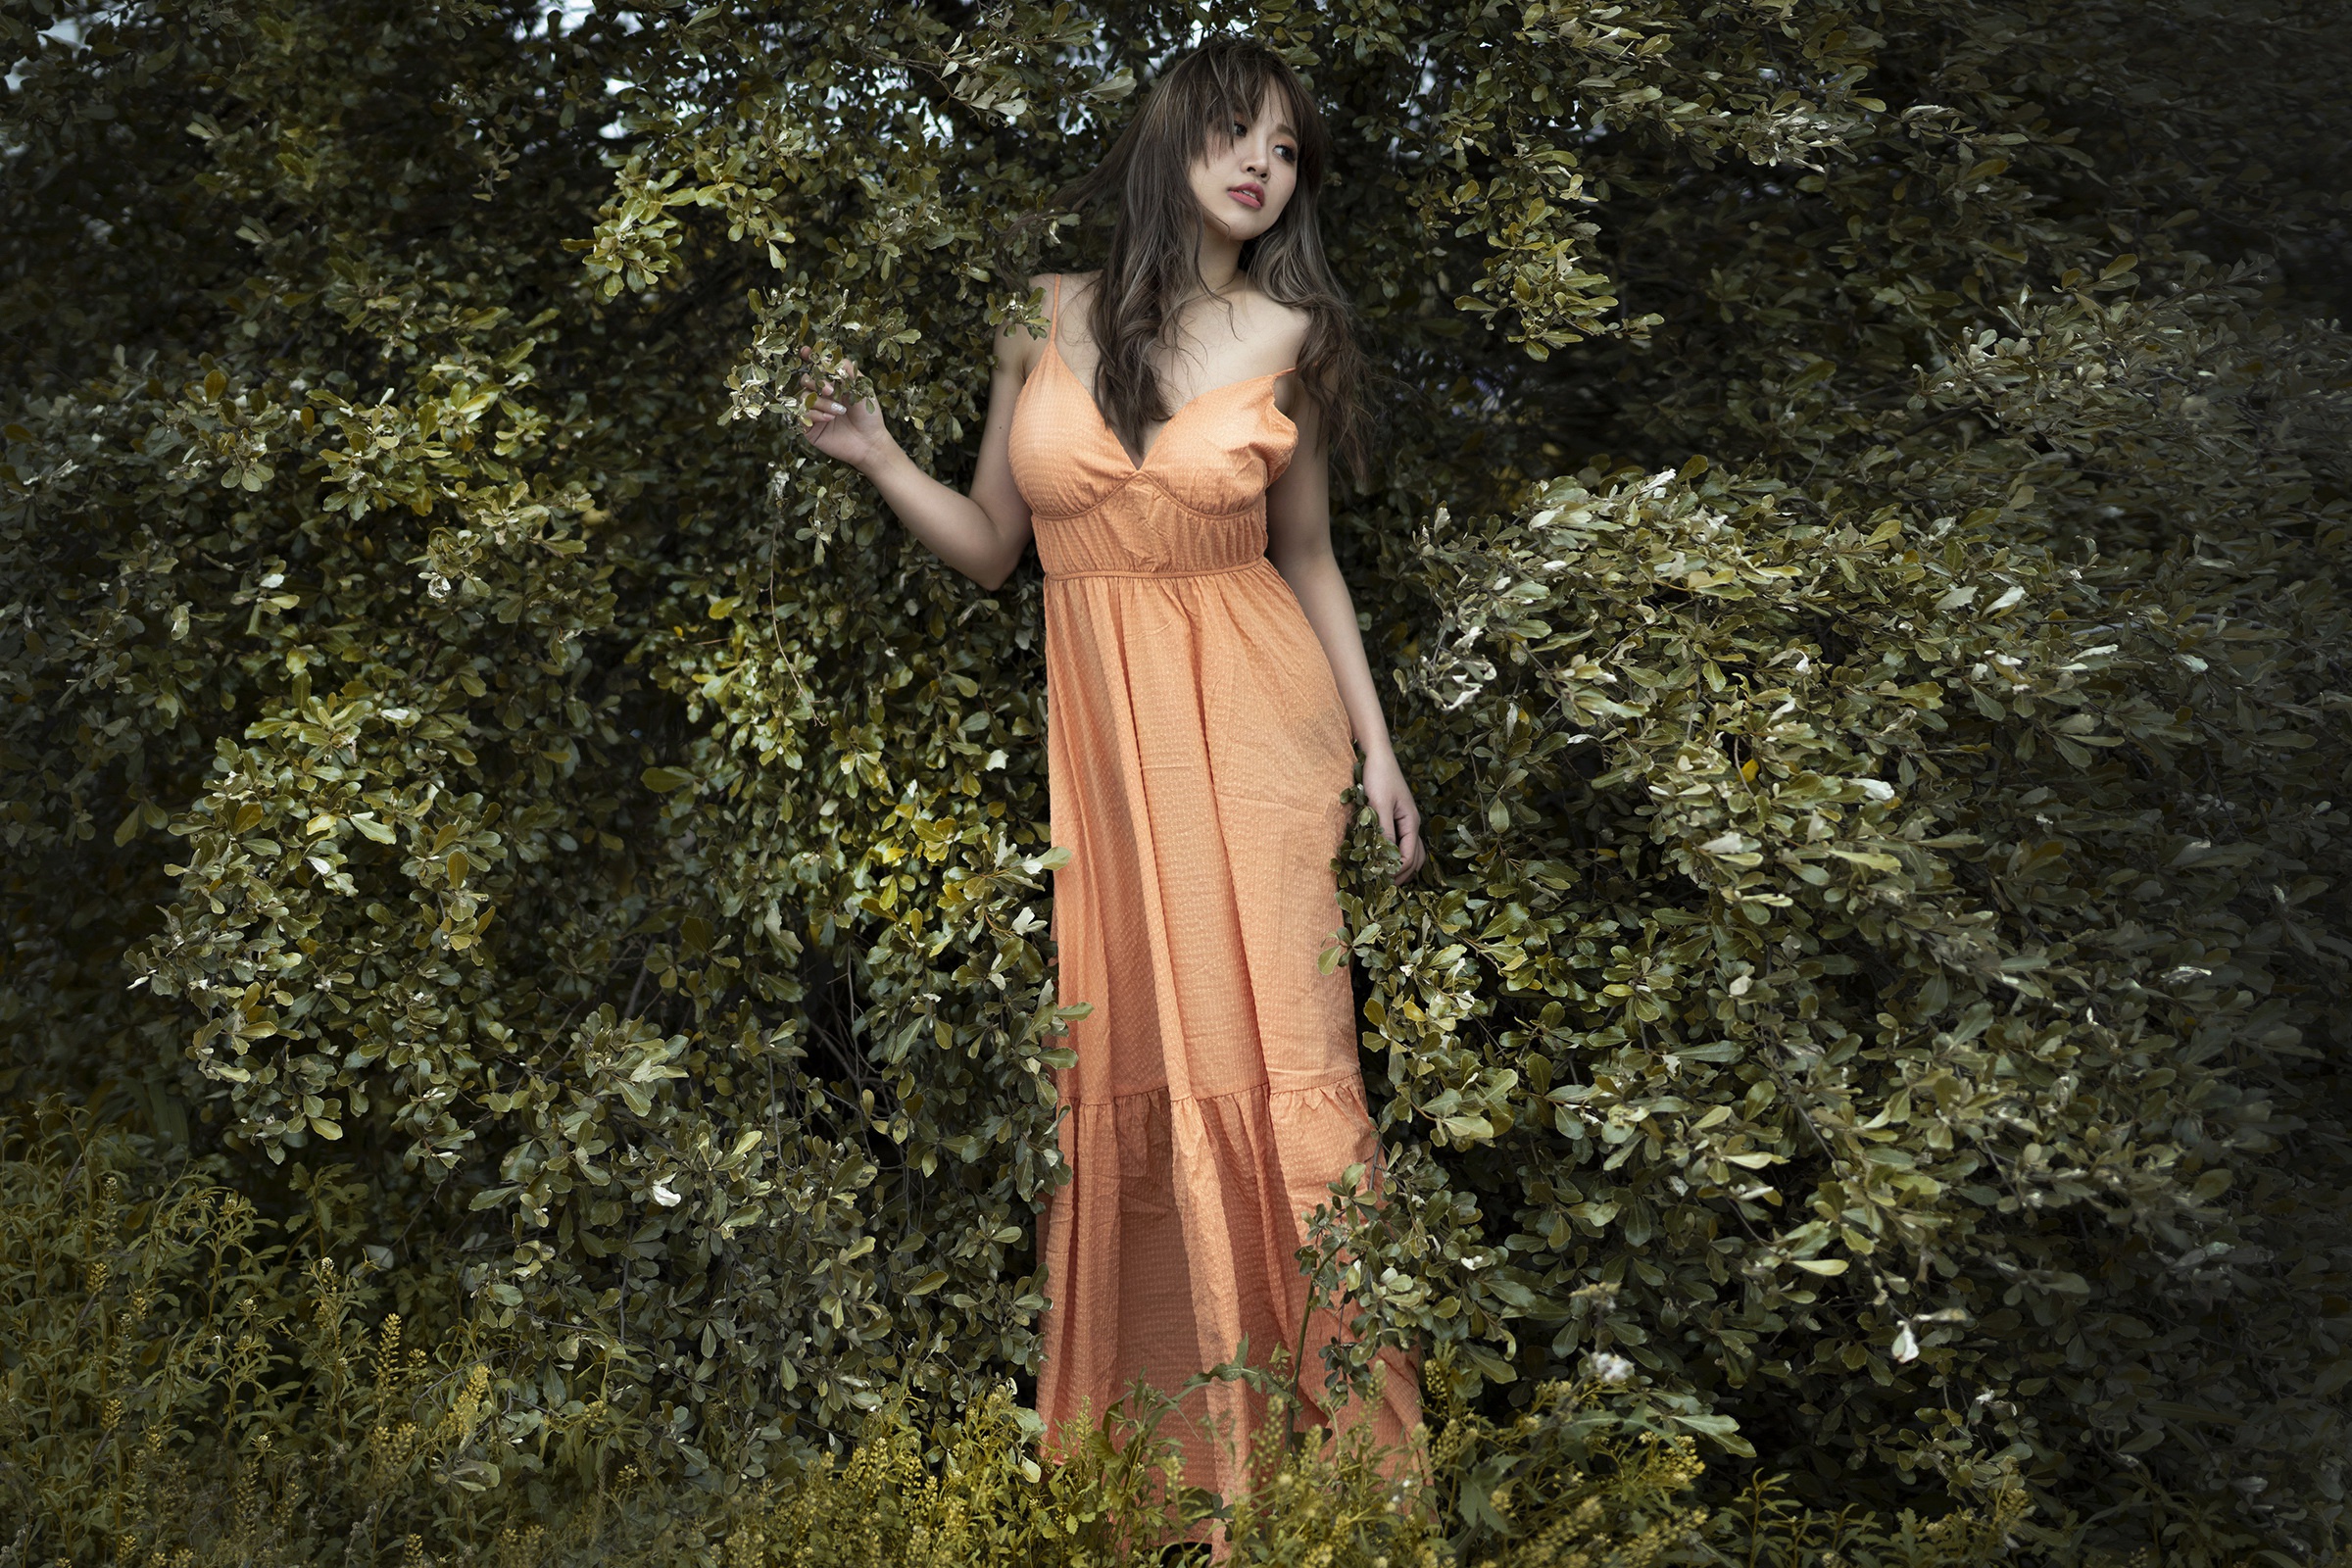 Asian Women Standing Outdoors Women Outdoors Plants Dark Hair Dress Orange Dress Looking Away 2400x1600